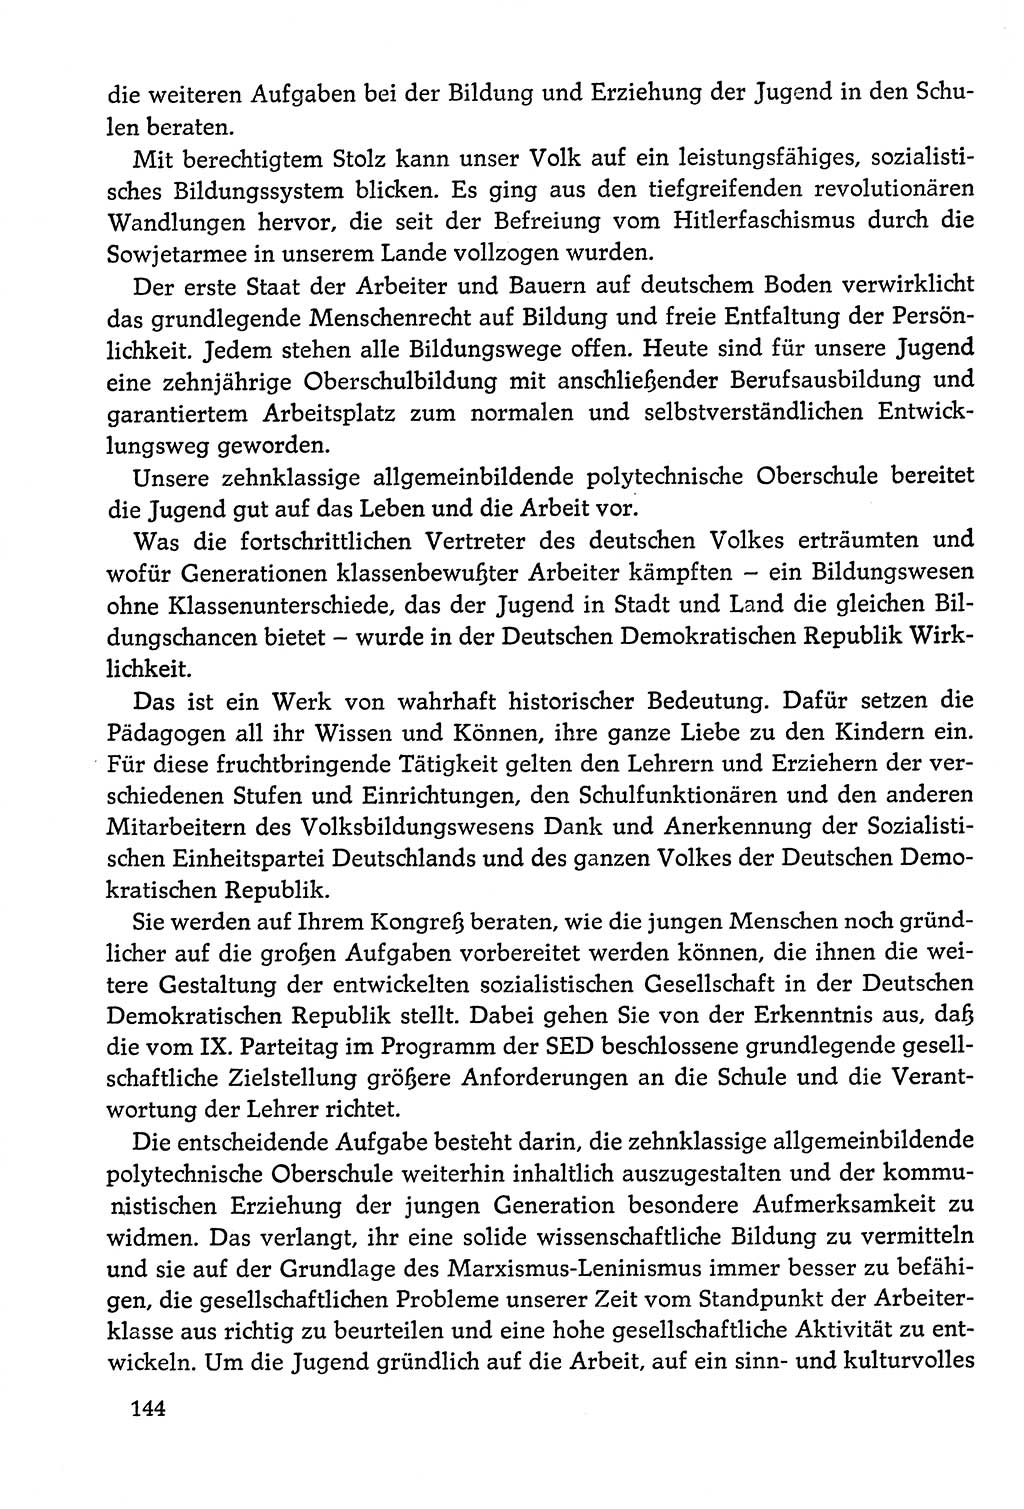 Dokumente der Sozialistischen Einheitspartei Deutschlands (SED) [Deutsche Demokratische Republik (DDR)] 1978-1979, Seite 144 (Dok. SED DDR 1978-1979, S. 144)